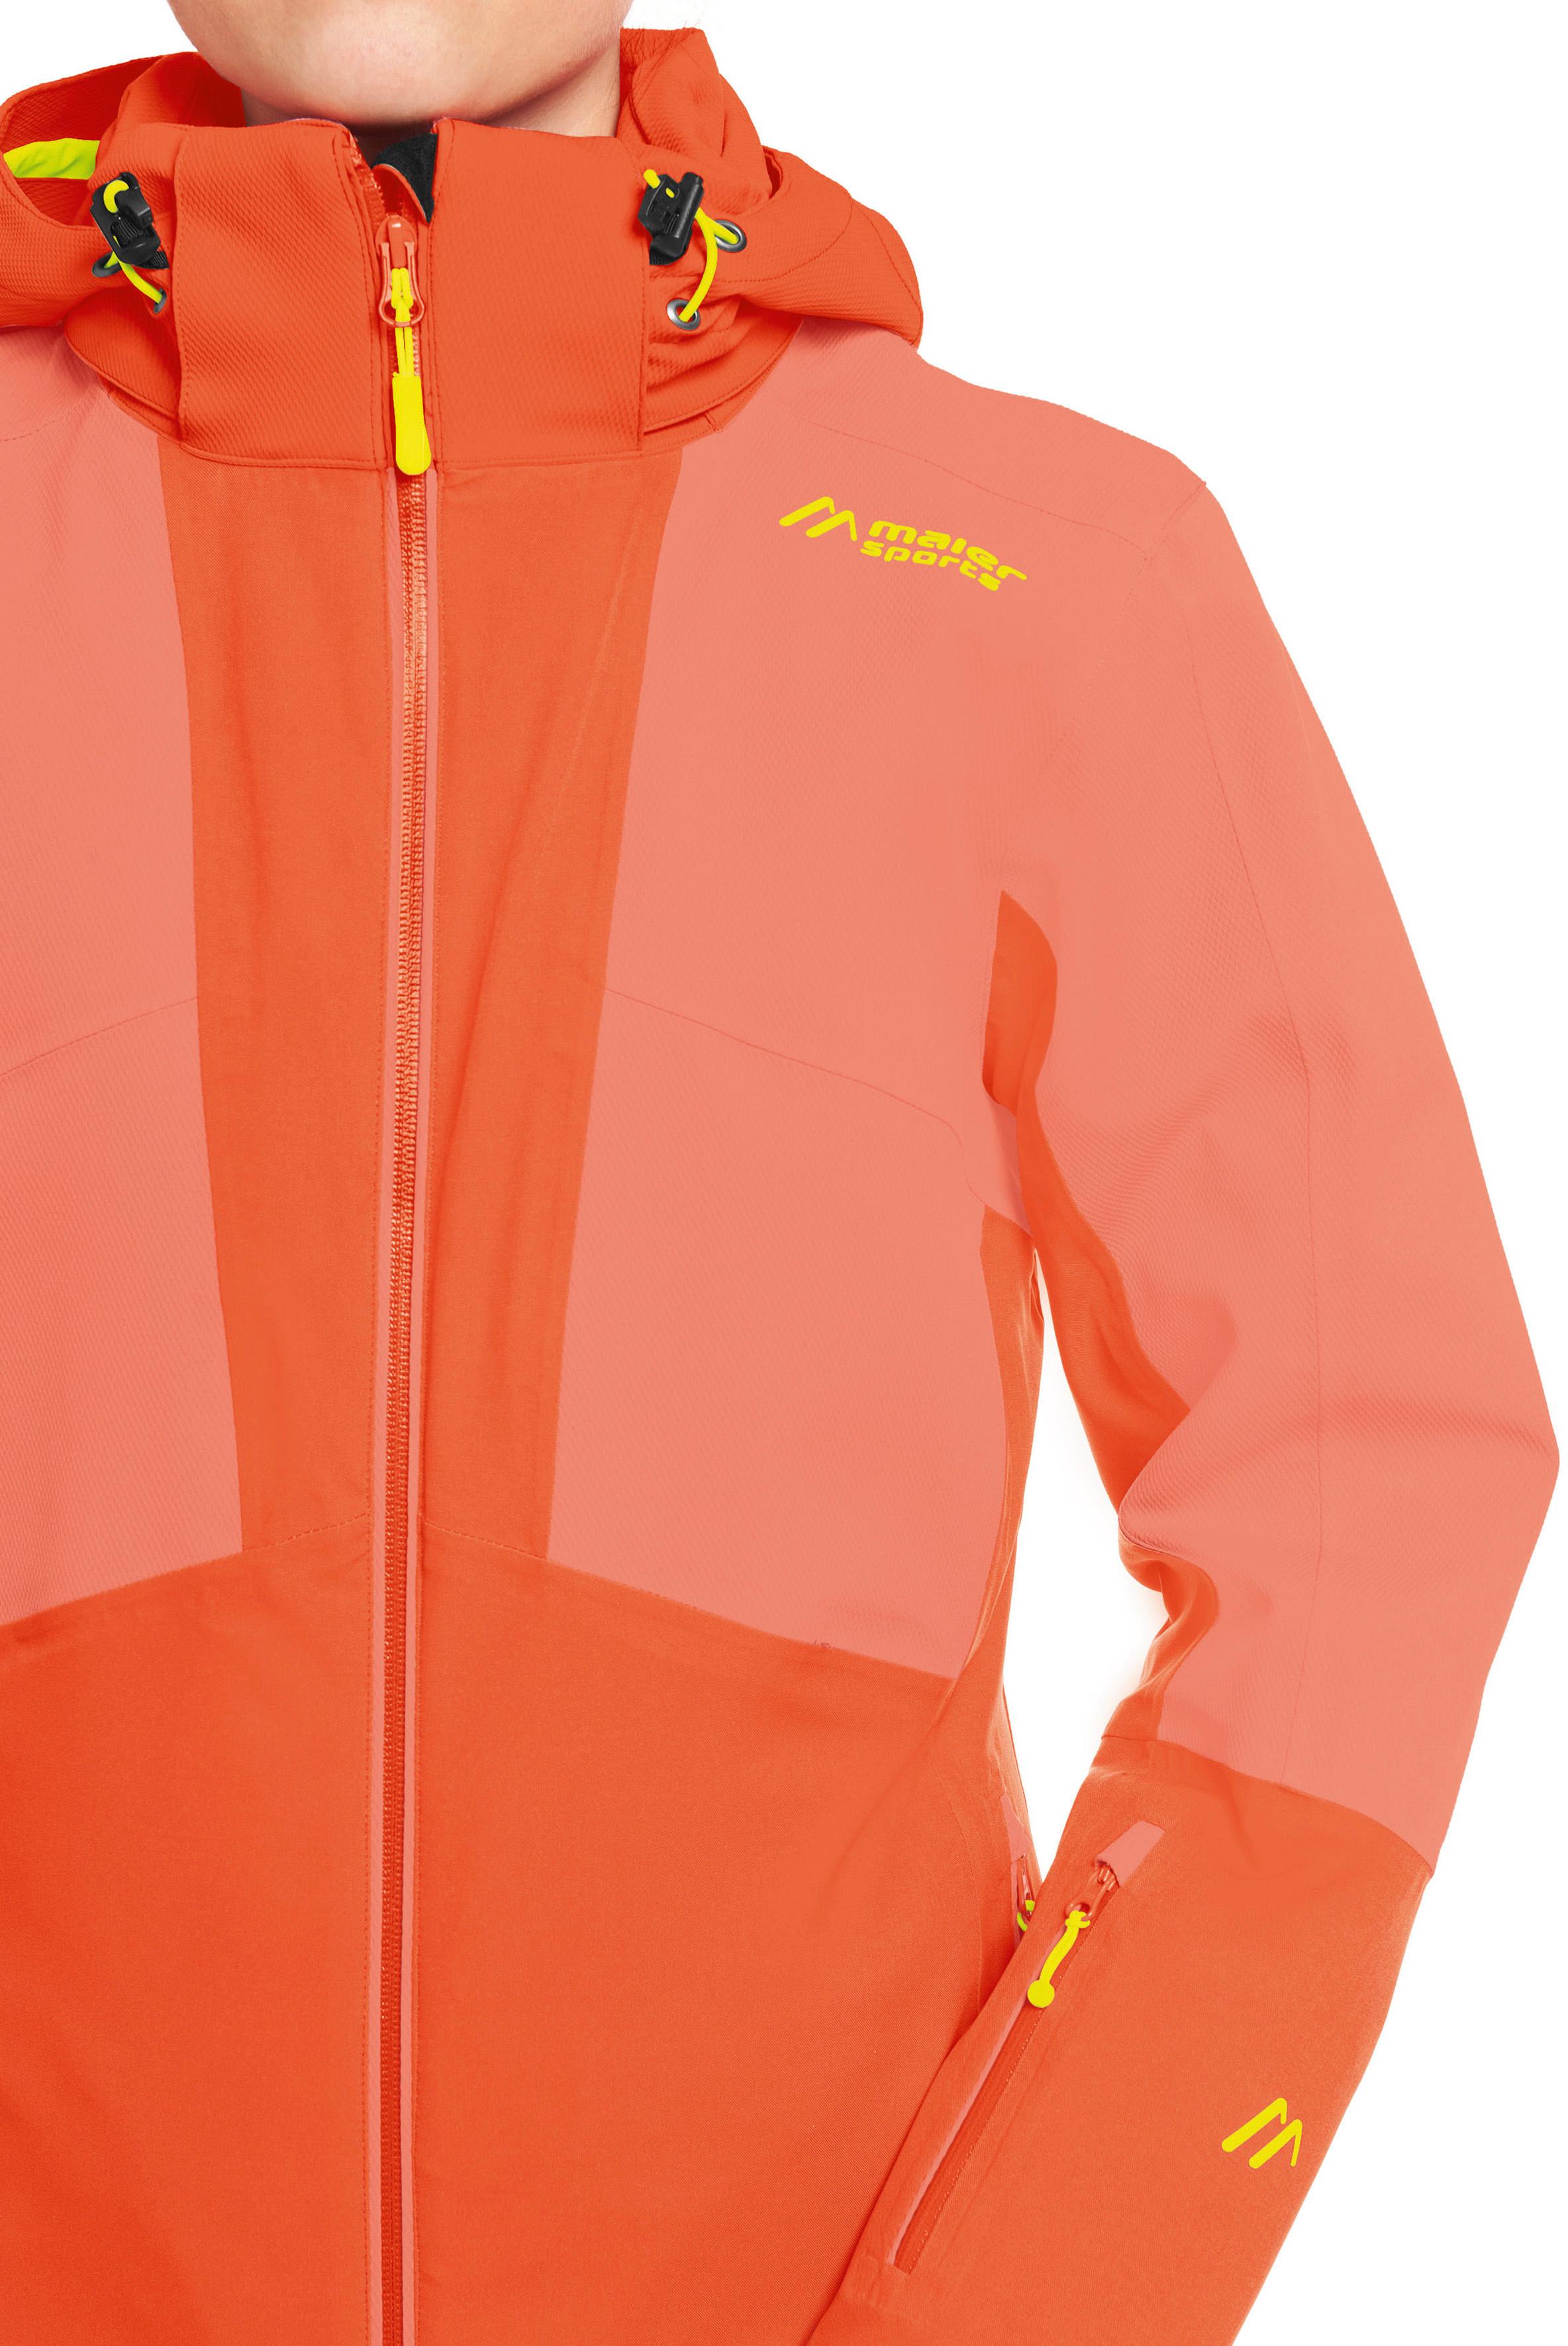 Maier Sports Fast Impulse Skijacke Damen von siren kaufen red Online SportScheck im Shop